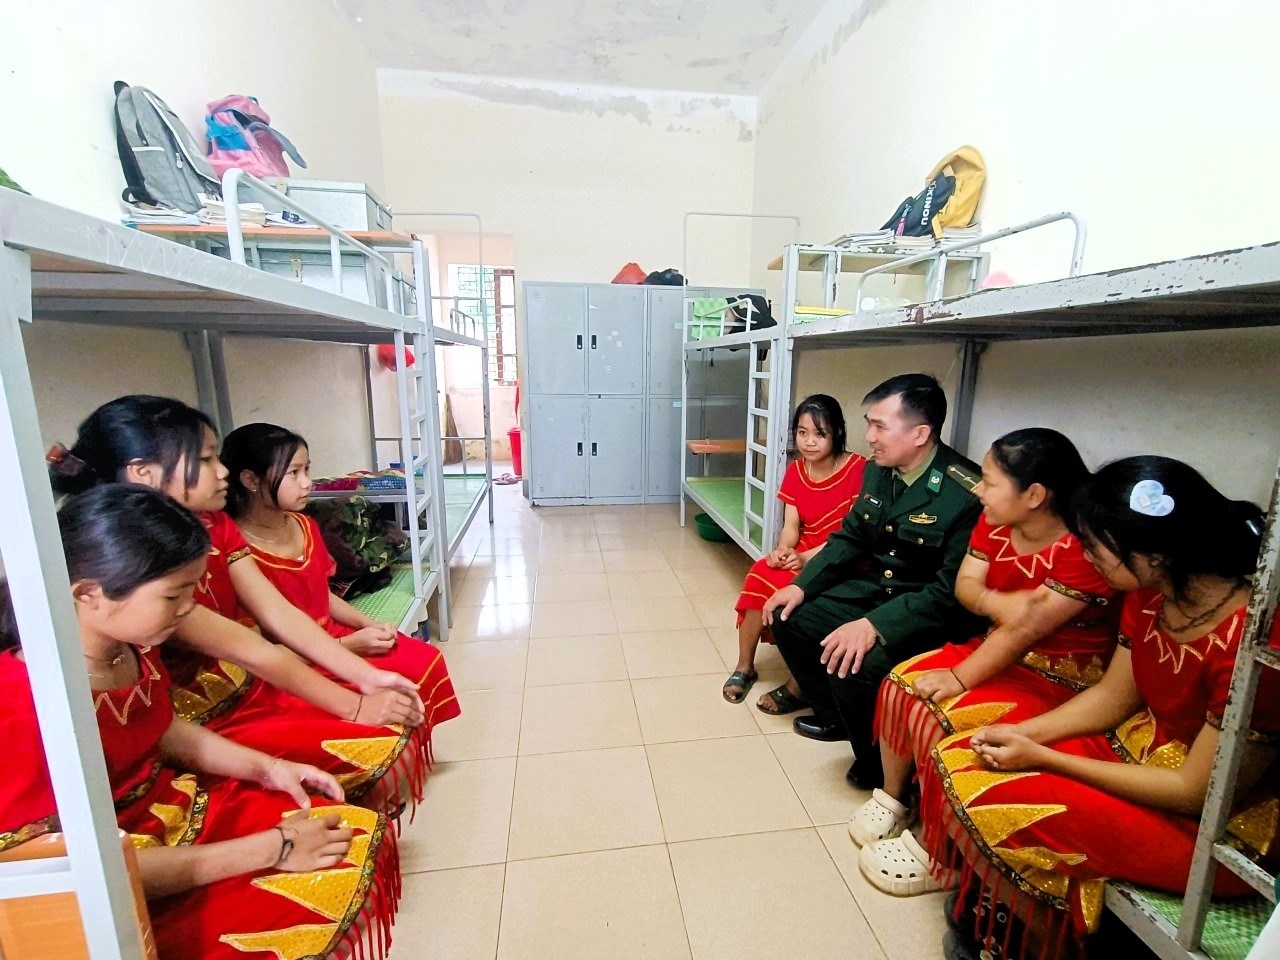 Thiếu tá Phan Văn Thắm, Đồn Biên phòng Môn Sơn, Bộ đội Biên phòng Nghệ An thường xuyên hỗ trợ, giúp đỡ các em học sinh trong sinh hoạt tại ký túc